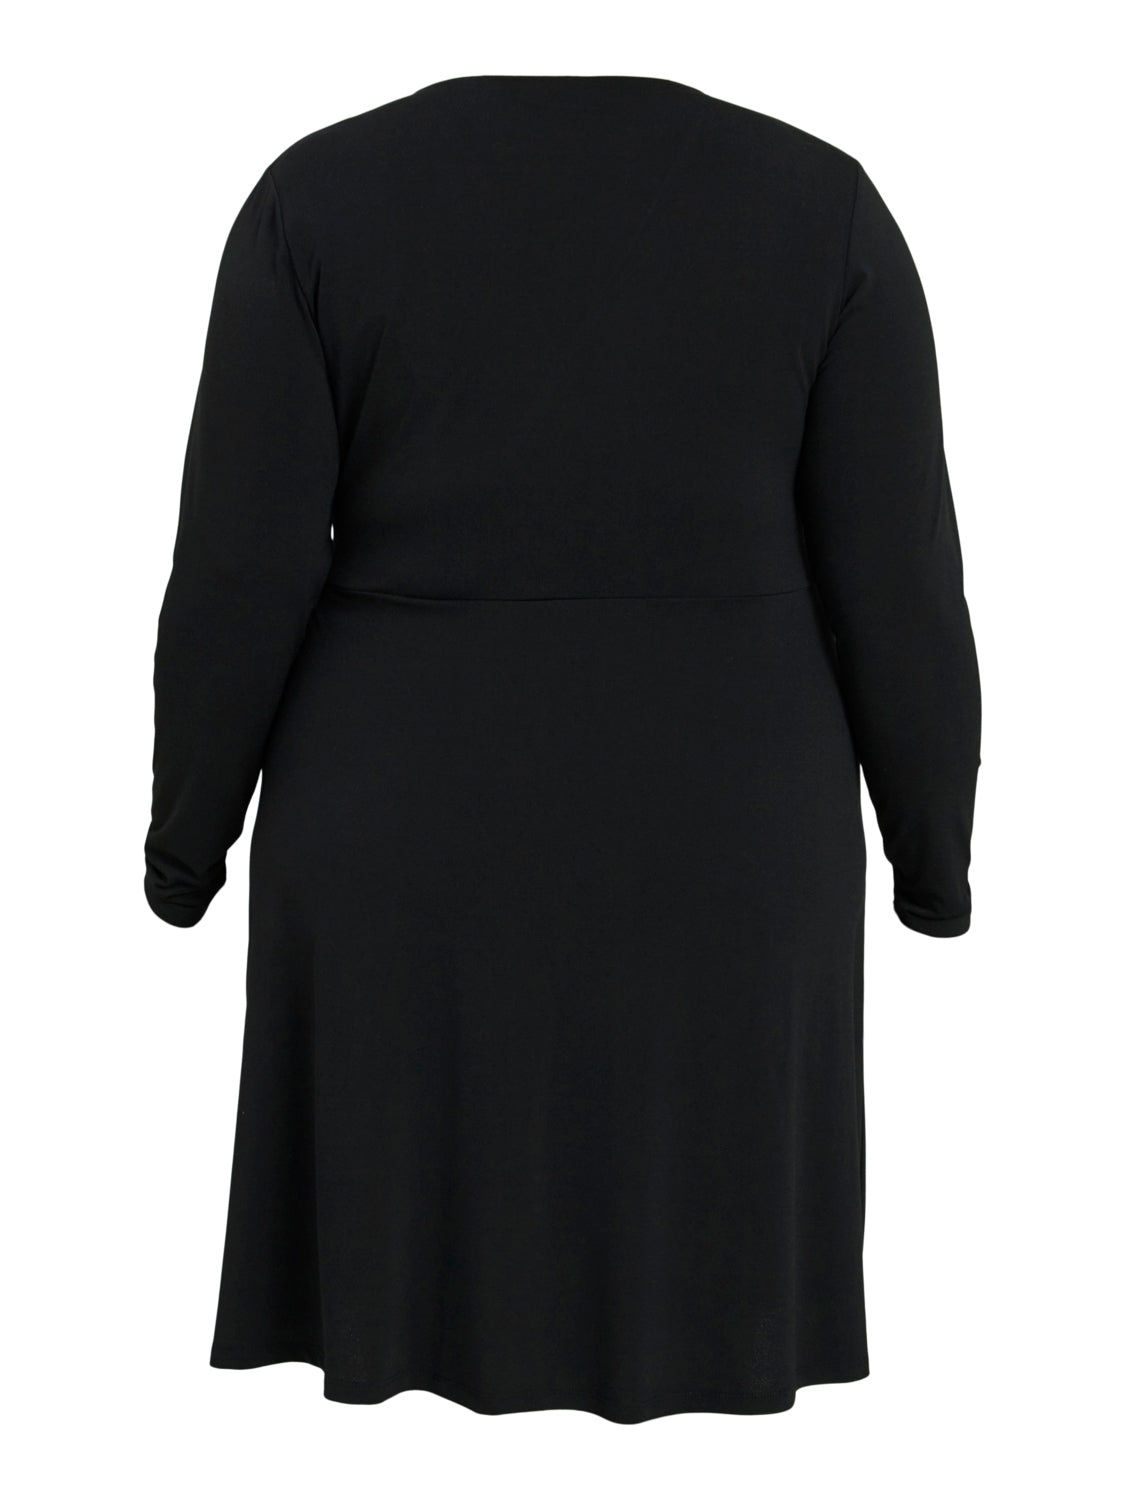 VIBORNEO Dress - Black